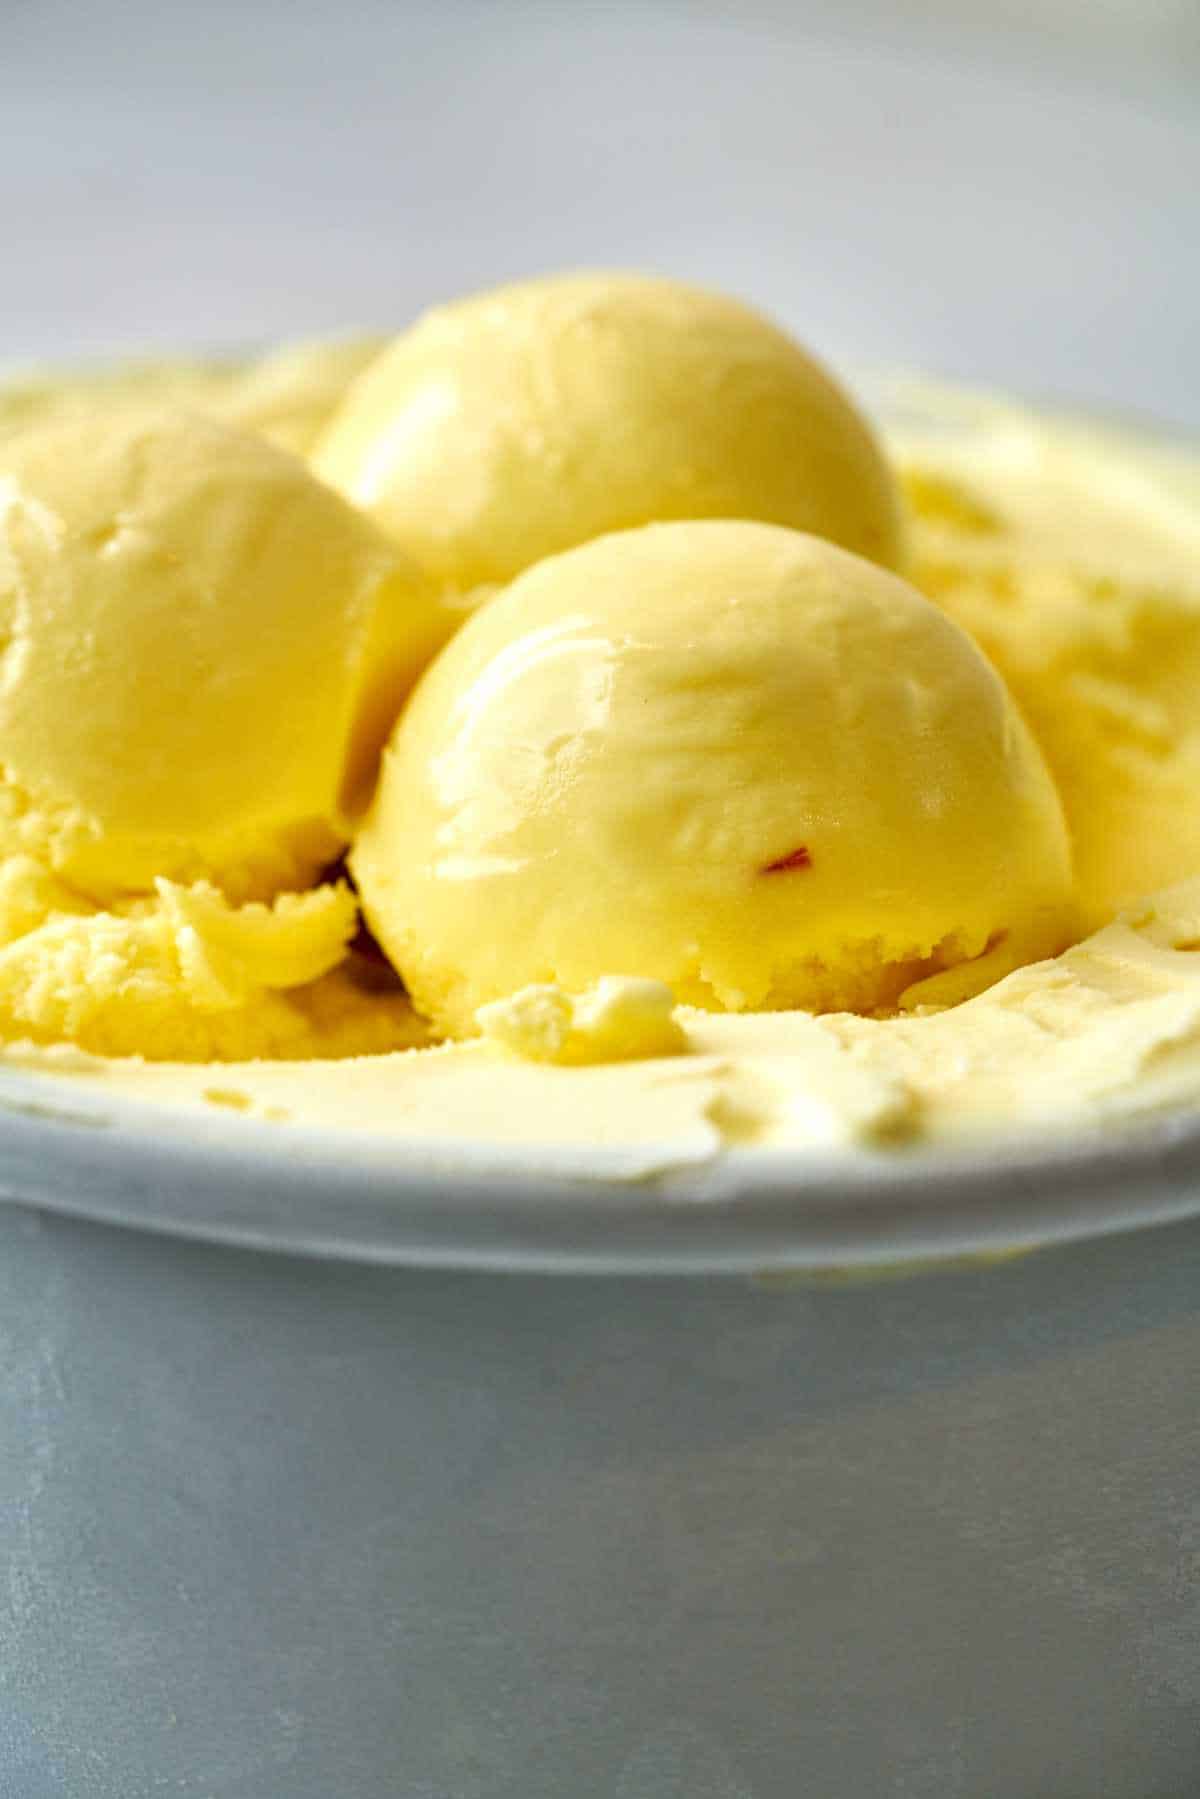 Scoops of yellow ice cream.